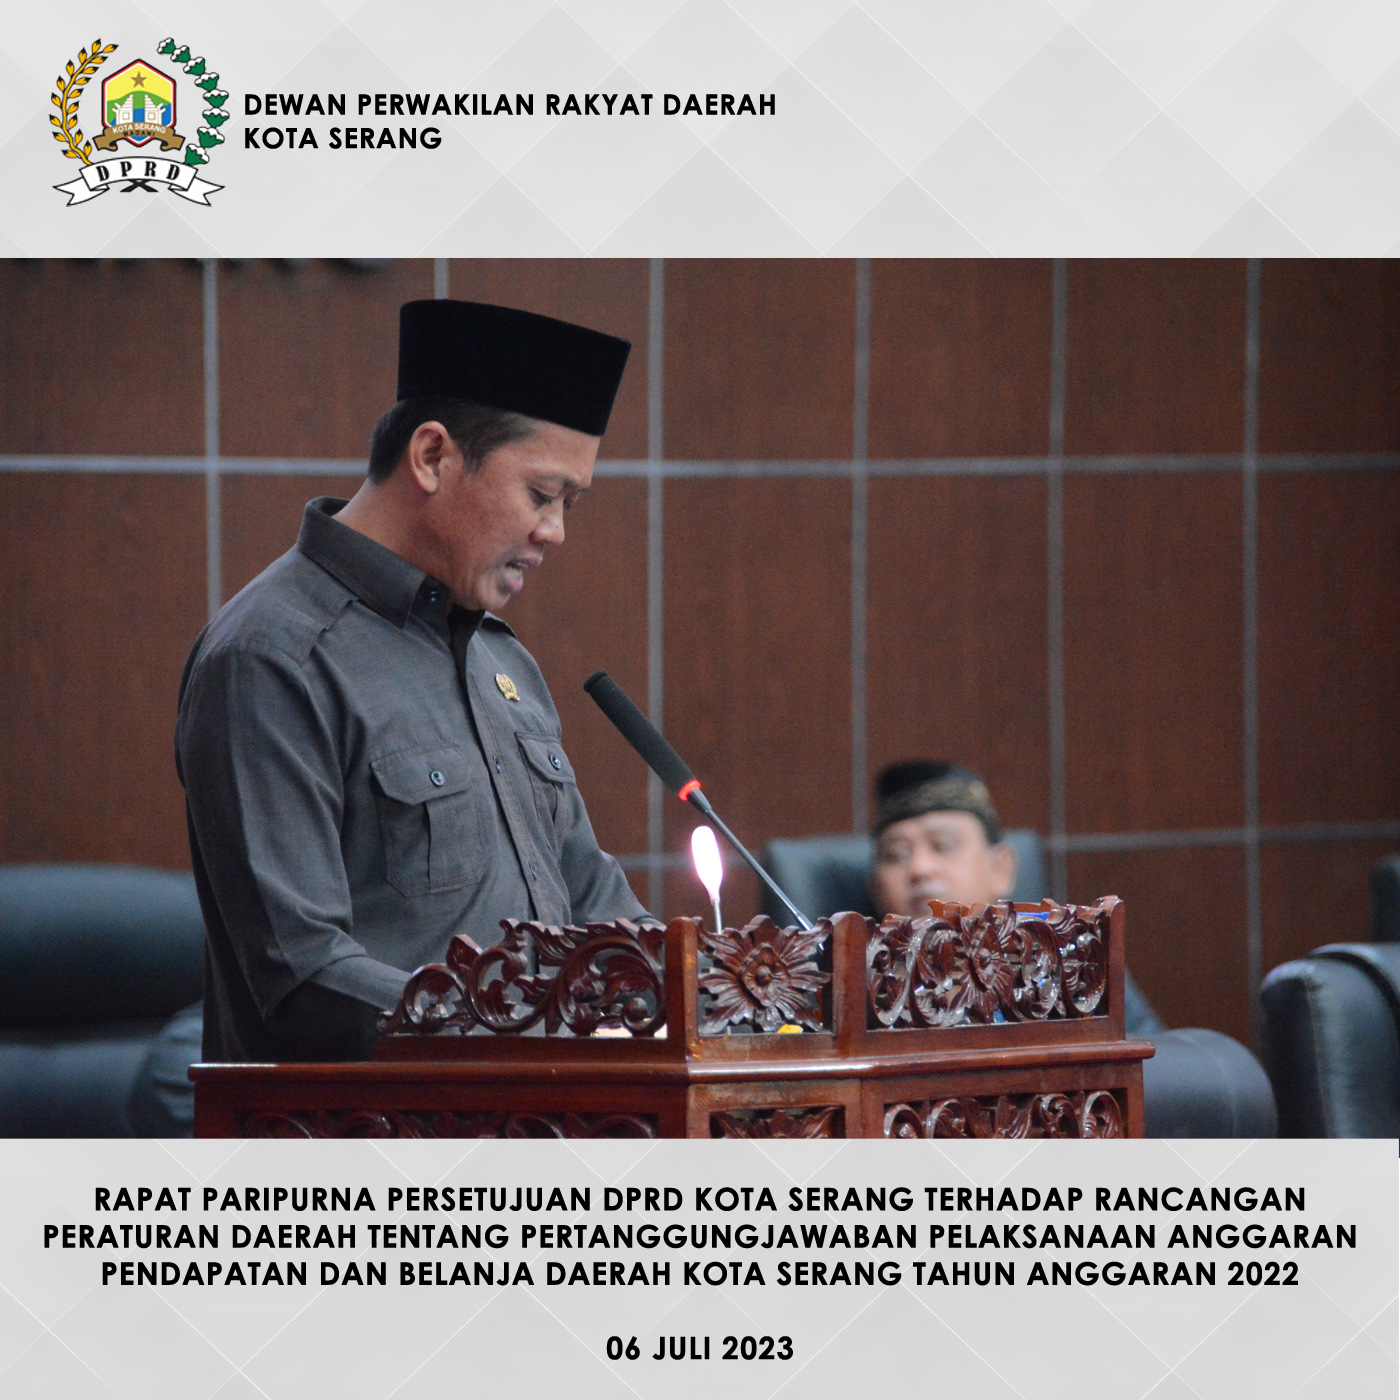 06 Juli 2023 - DPRD Kota Serang Menggelar Rapat Paripurna Guna Membahas Persetujuan DPRD Kota Serang terhadap Raperda tentang Pertanggungjawaban Pelaksanaan APBD Kota Serang T.A. 2022